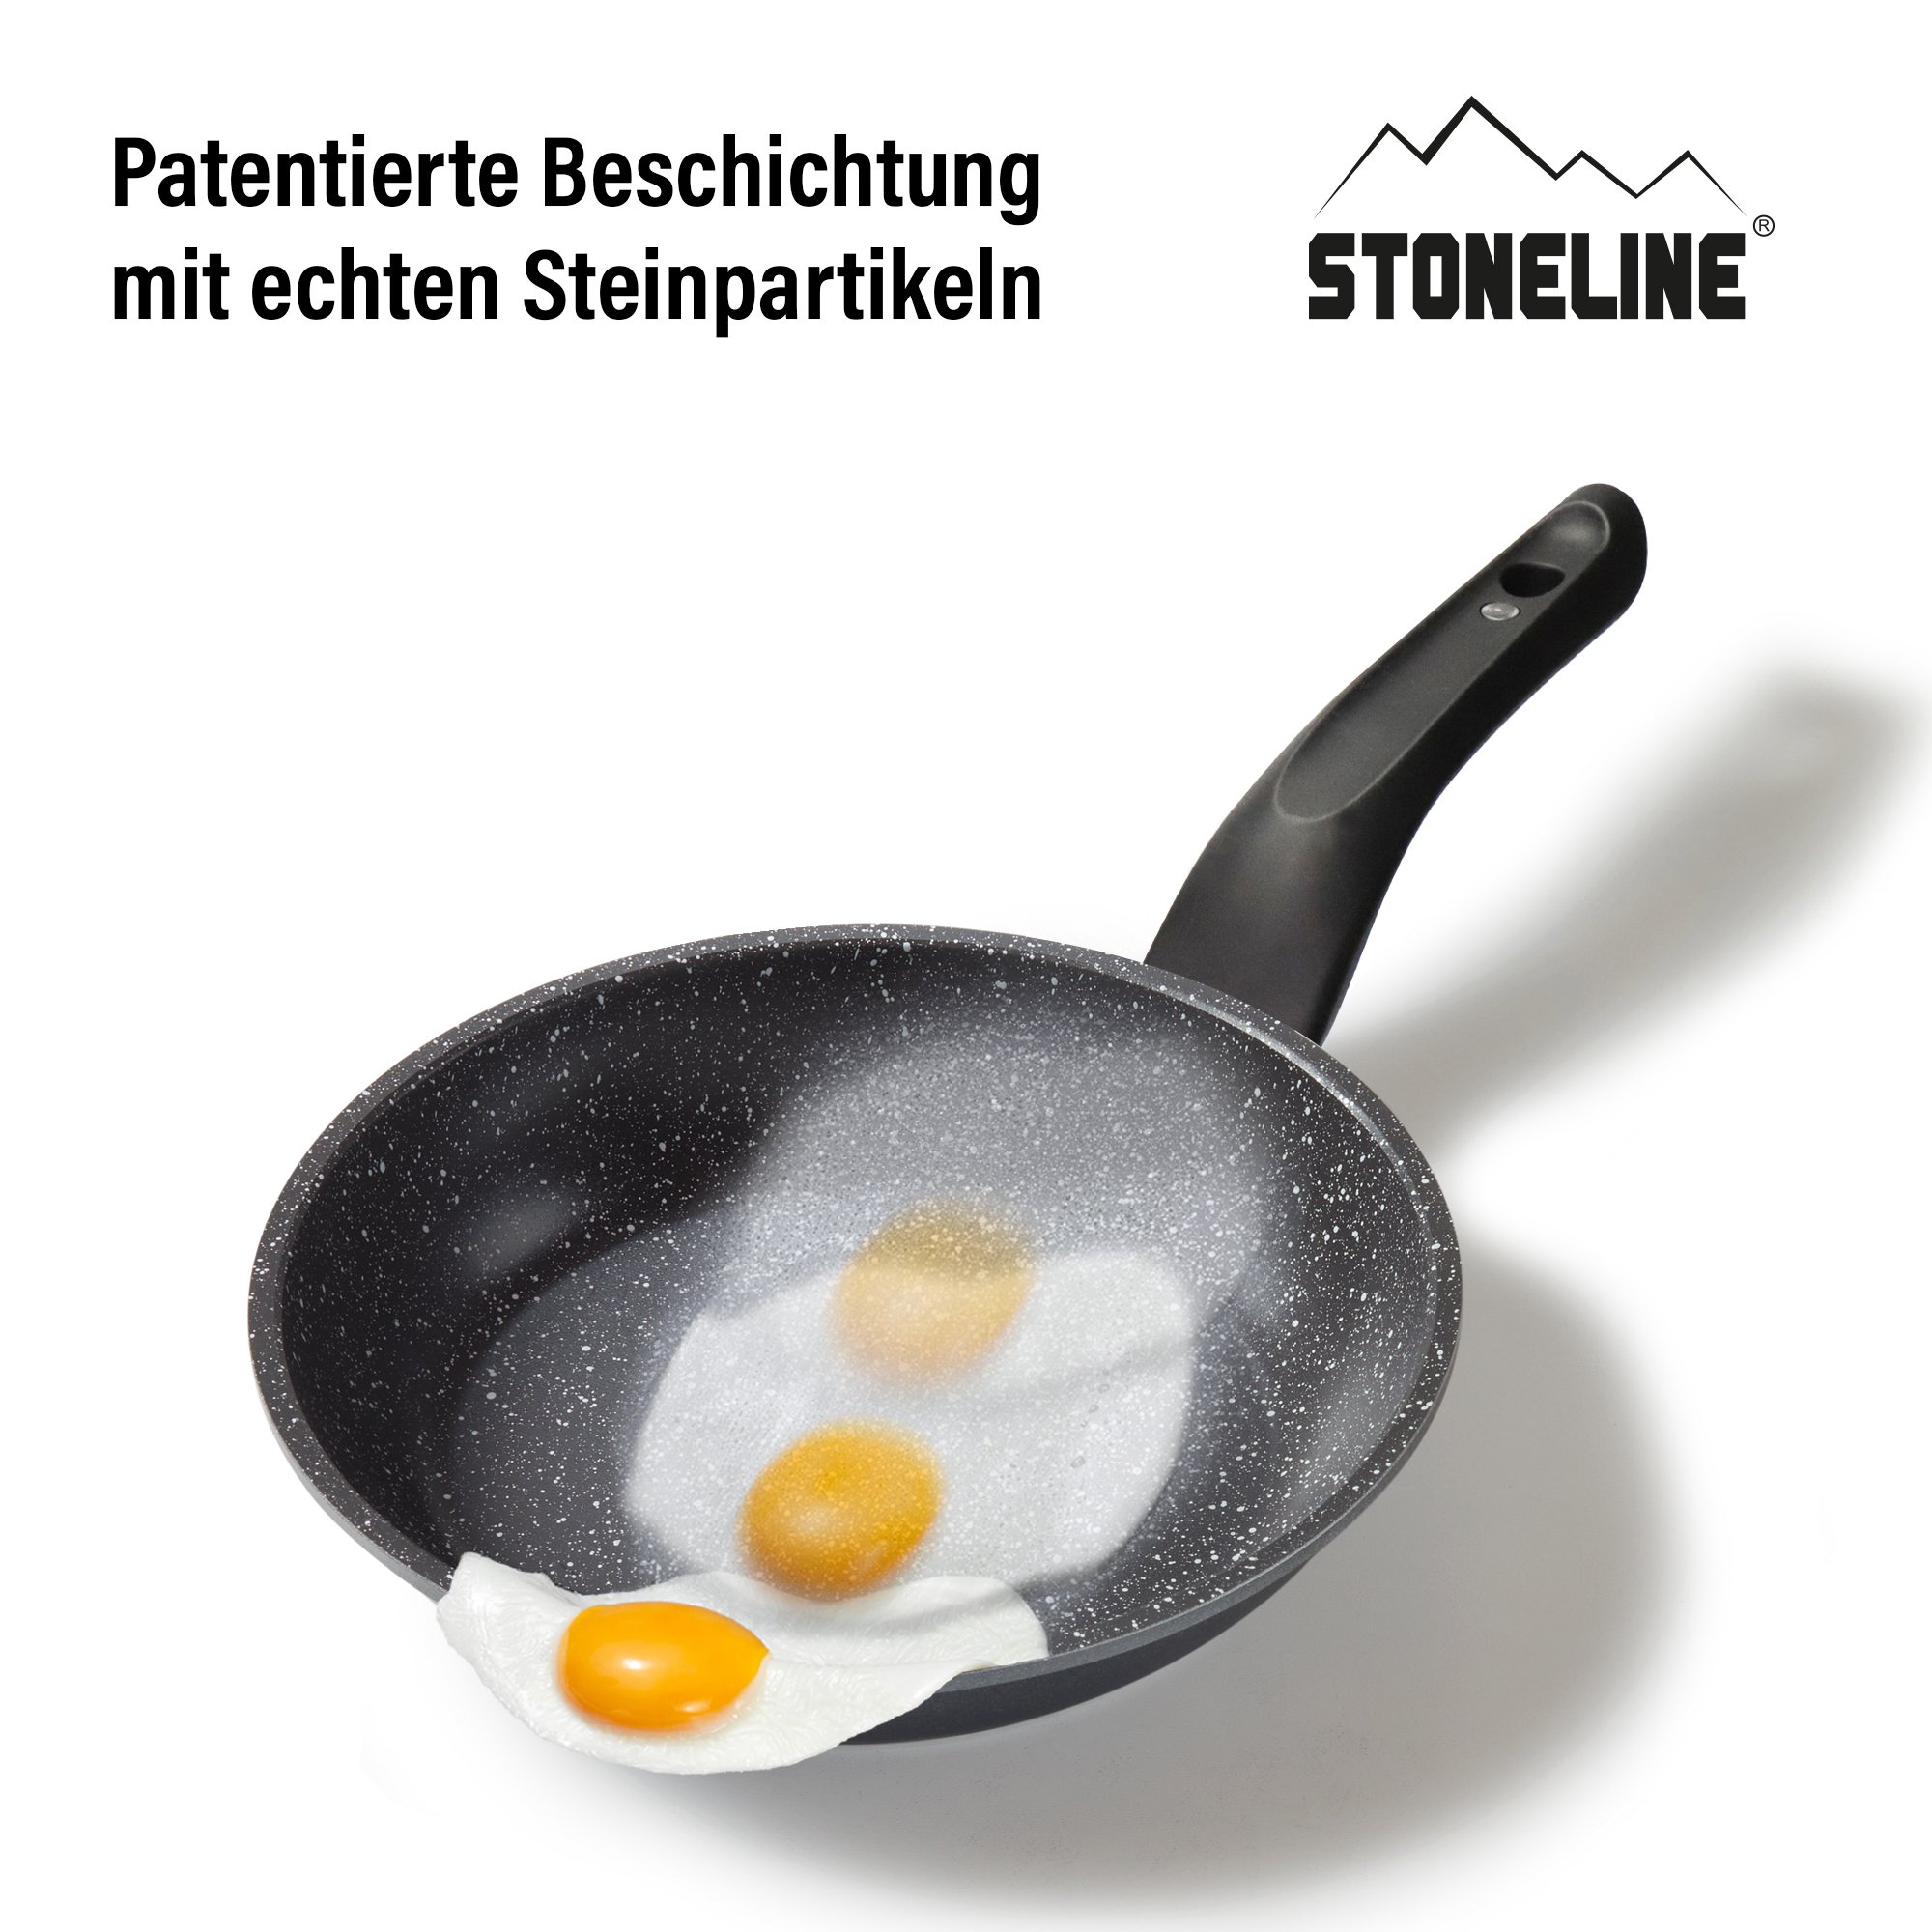 STONELINE® Bratpfanne 24 cm, Made in Germany, mit Magnet-Griff, antihaftbeschichtet und Induktion geeignet